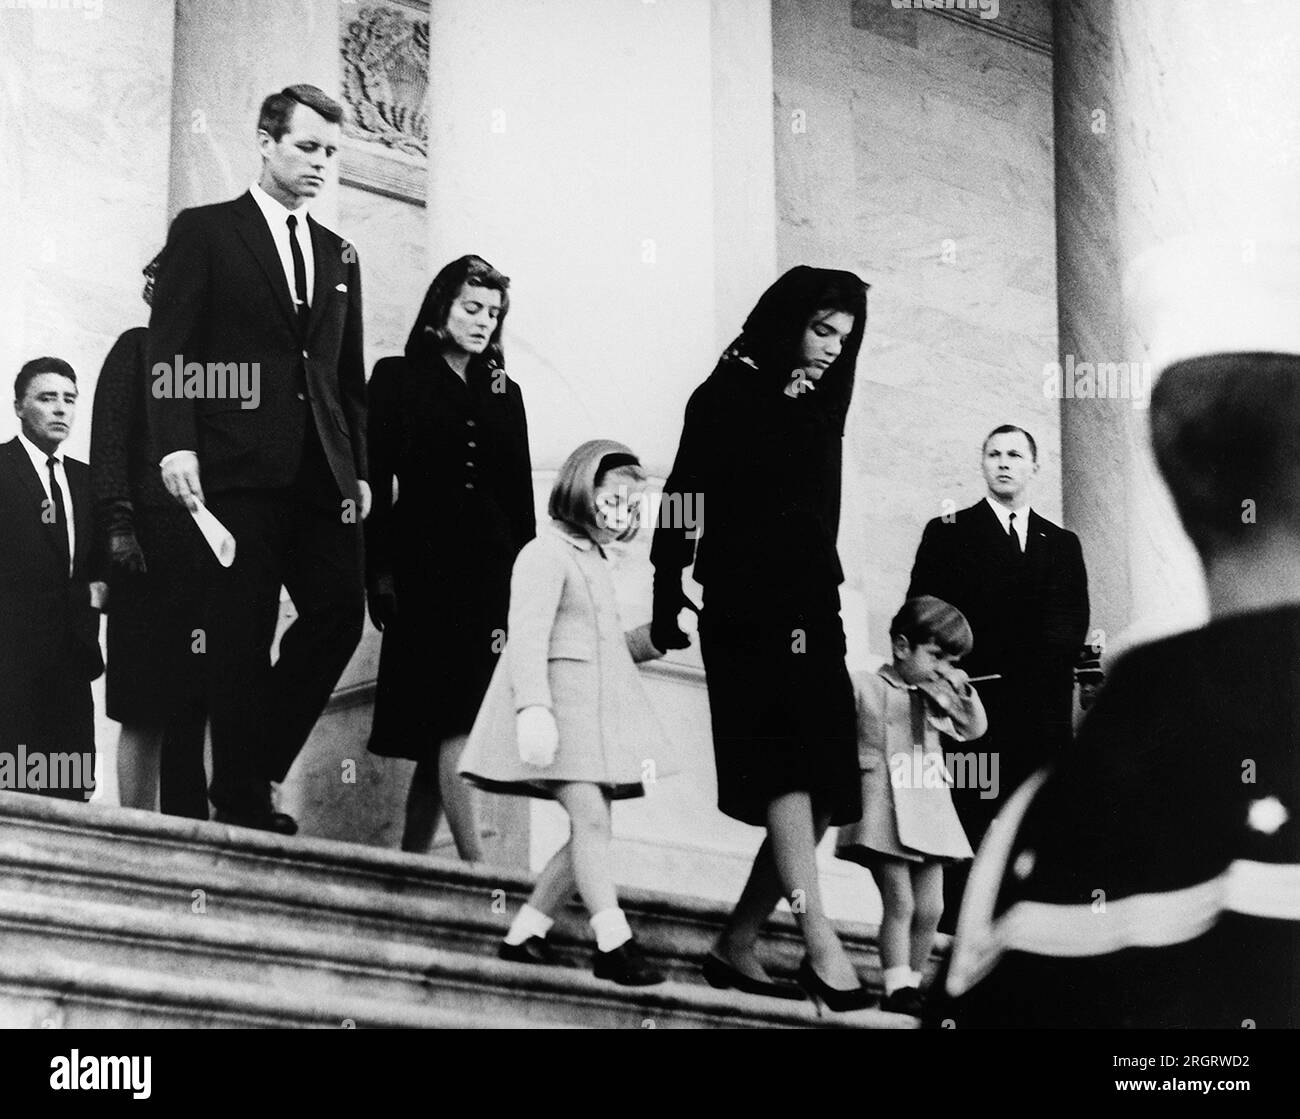 Washington, D.C.: 25. November 1963 die Familie des Präsidenten verlässt das Capitol nach der Beerdigung. Erste Reihe: Caroline Kennedy, Jacqueline Bouvier Kennedy, John F. Kennedy, Jr. (2. Reihe) Attorney General Robert F. Kennedy, Patricia Kennedy Lawford (versteckt) Jean Kennedy Smith (3. Reihe) Peter Lawford. Stockfoto